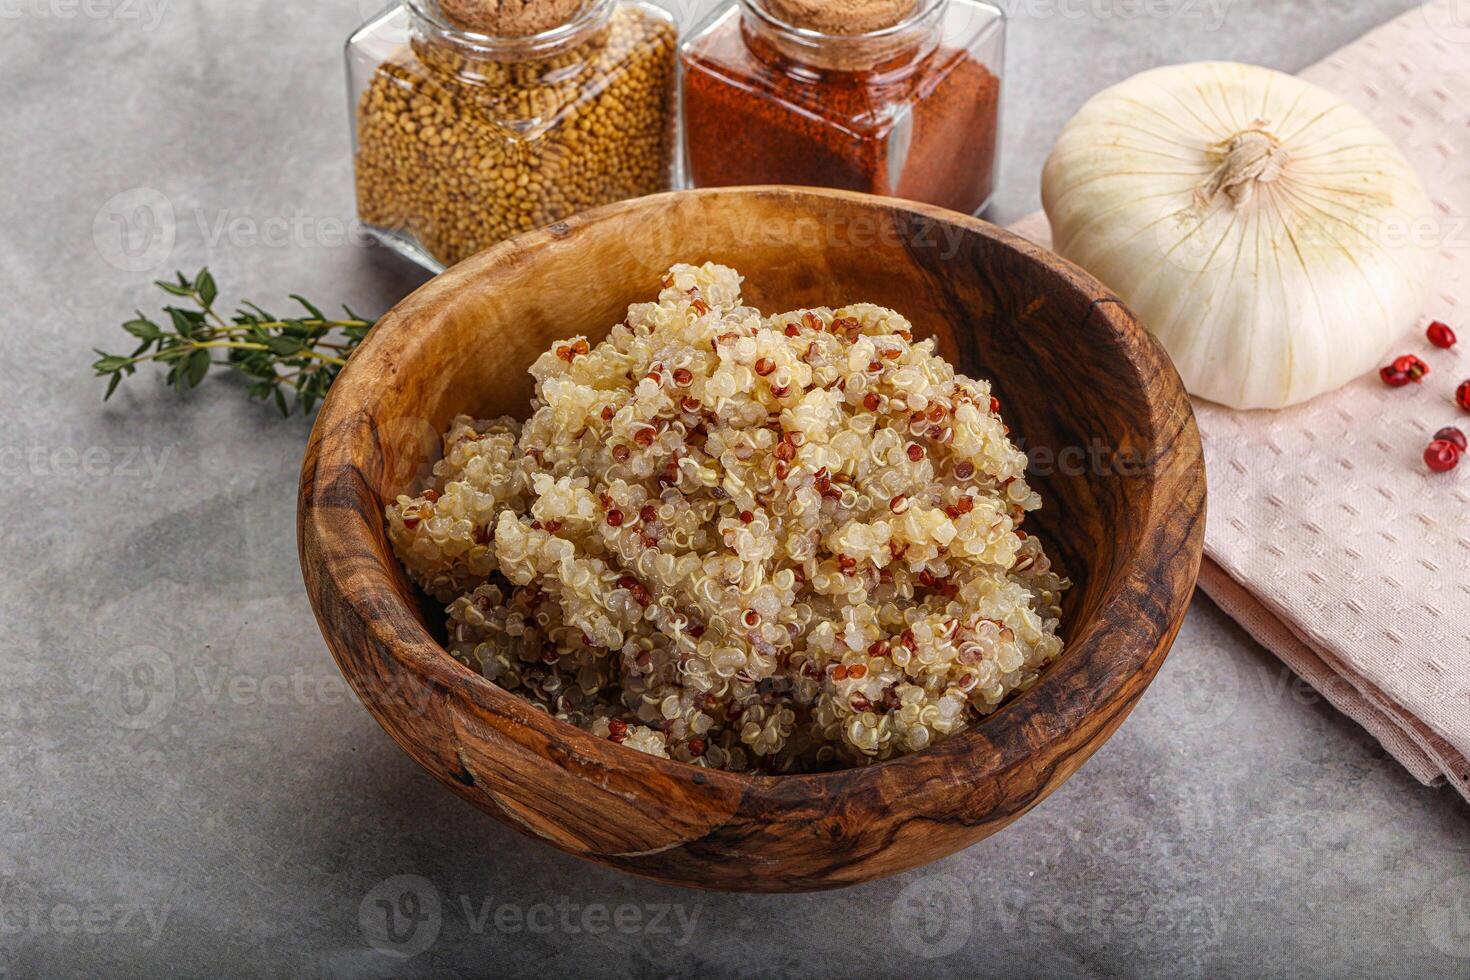 Vegan cuisine - boiled quinoa cereal photo